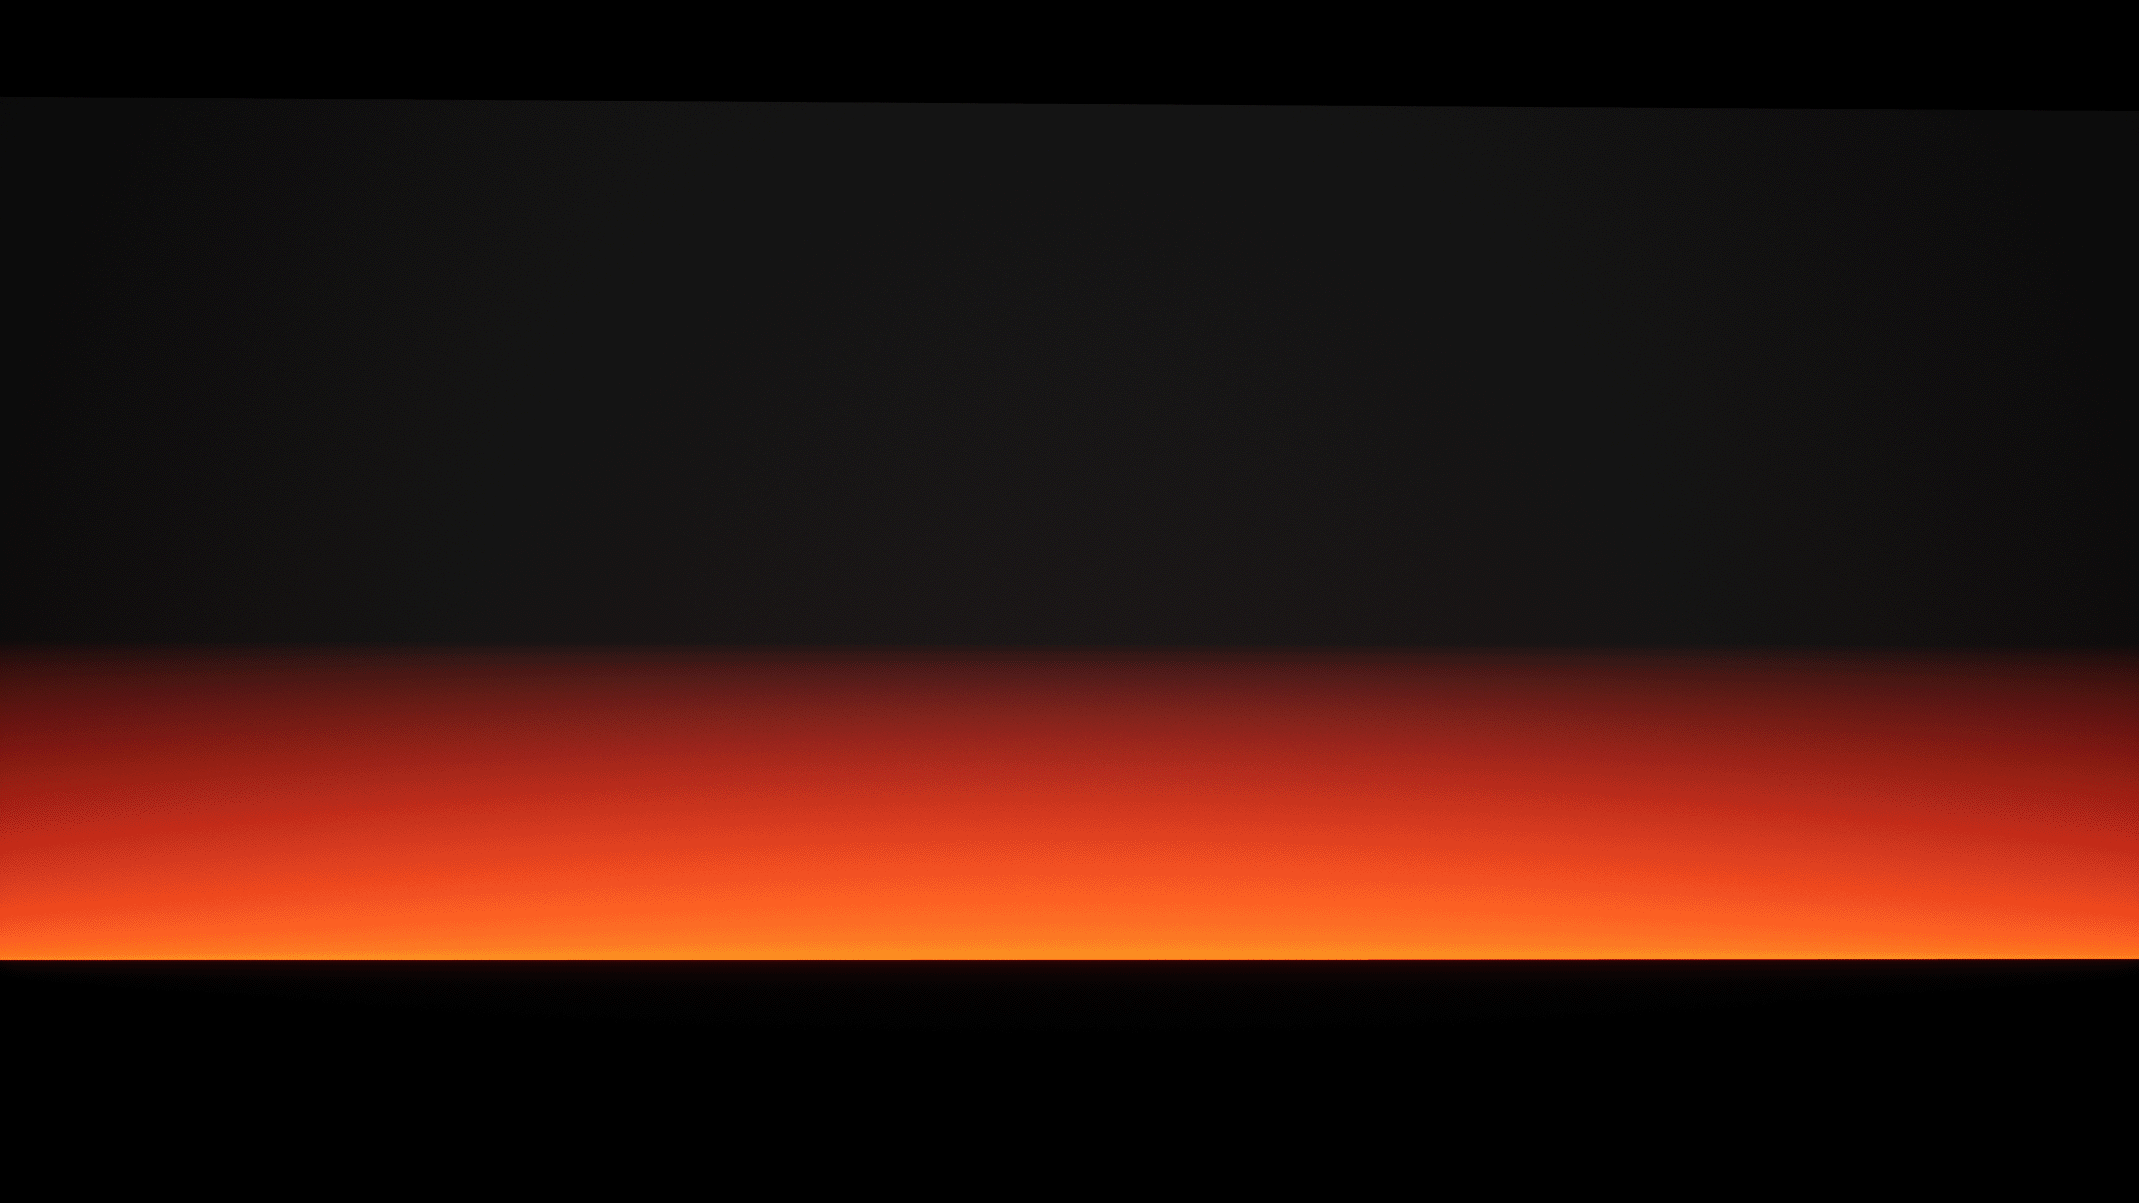 Bộ hình Cảnh quang Corrupt Sun là một tác phẩm nghệ thuật mang đậm nét hiện thực nhưng vẫn tràn đầy tính thẩm mỹ. Với màu sắc ấn tượng và chi tiết tuyệt vời, đây chắc chắn là một tác phẩm sẽ mang lại cho bạn nhiều trải nghiệm thú vị.